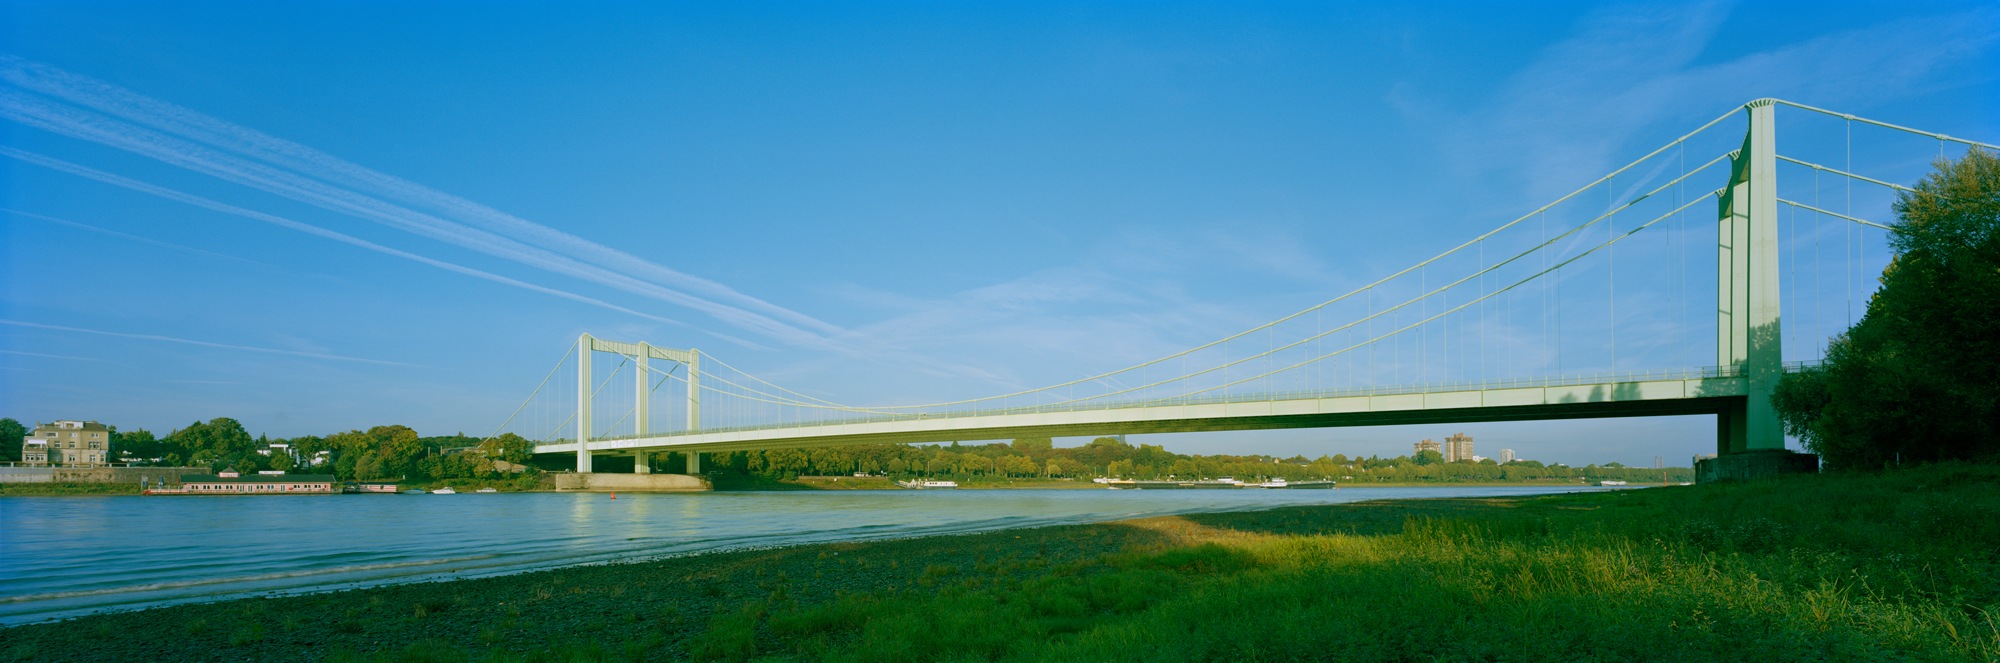 大幅面攝影, 大幅面攝影, 大幅面攝影, 攝影, 照片, 攝影, 6x17, 市, 建築, 建築, 具體, 鋼, 具體, 鋼, 橋, 橋, 科隆, 科隆, Rodenkirchen, Autobahnbrücke